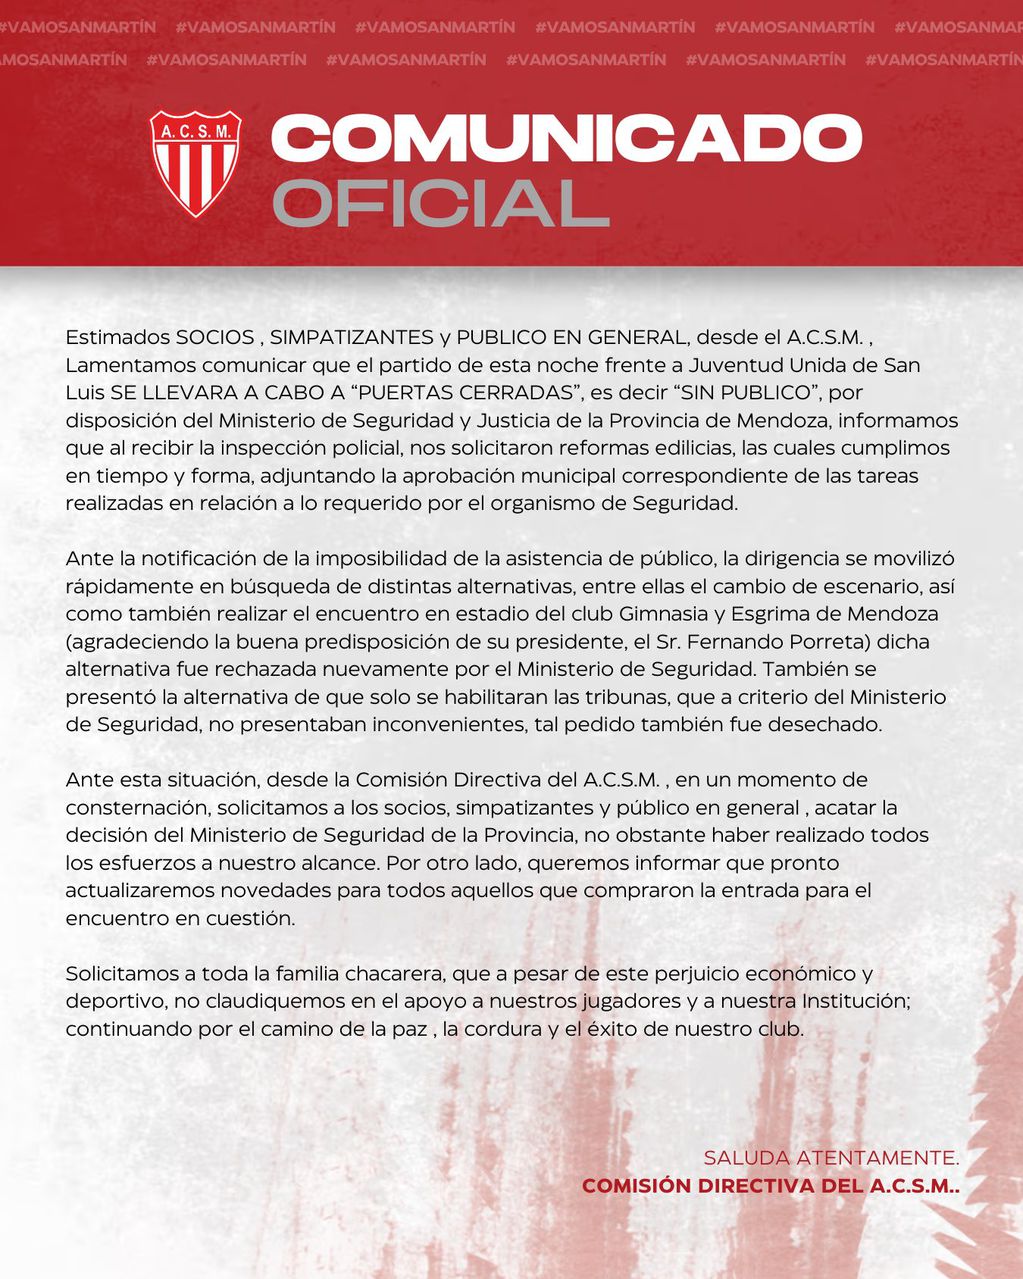 El comunicado del Club Atlético San Martín por la suspensión del ingreso al público por parte del Ministerio de Seguridad.